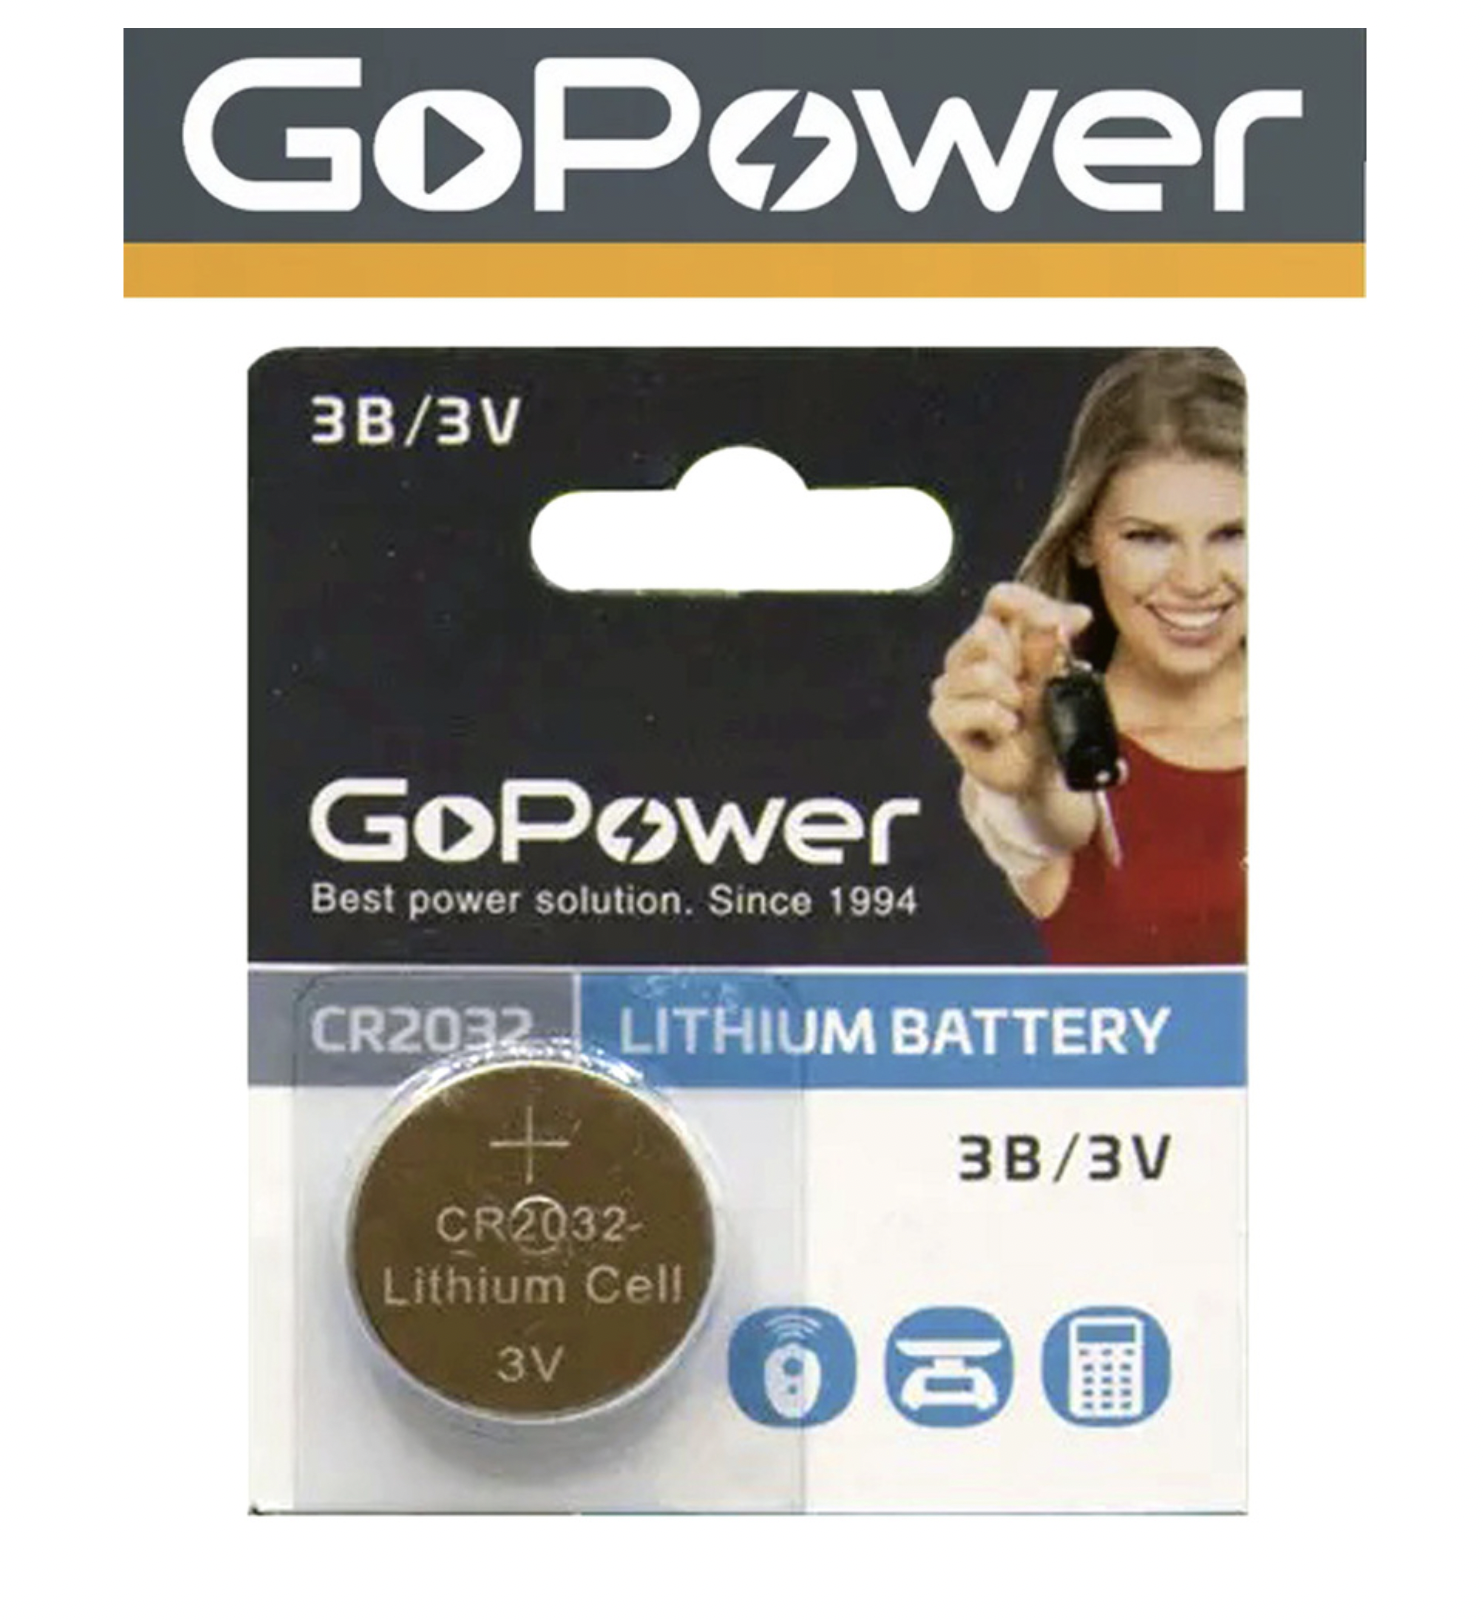    / Go Power -  Lithium Battery CR2032 3V 1 